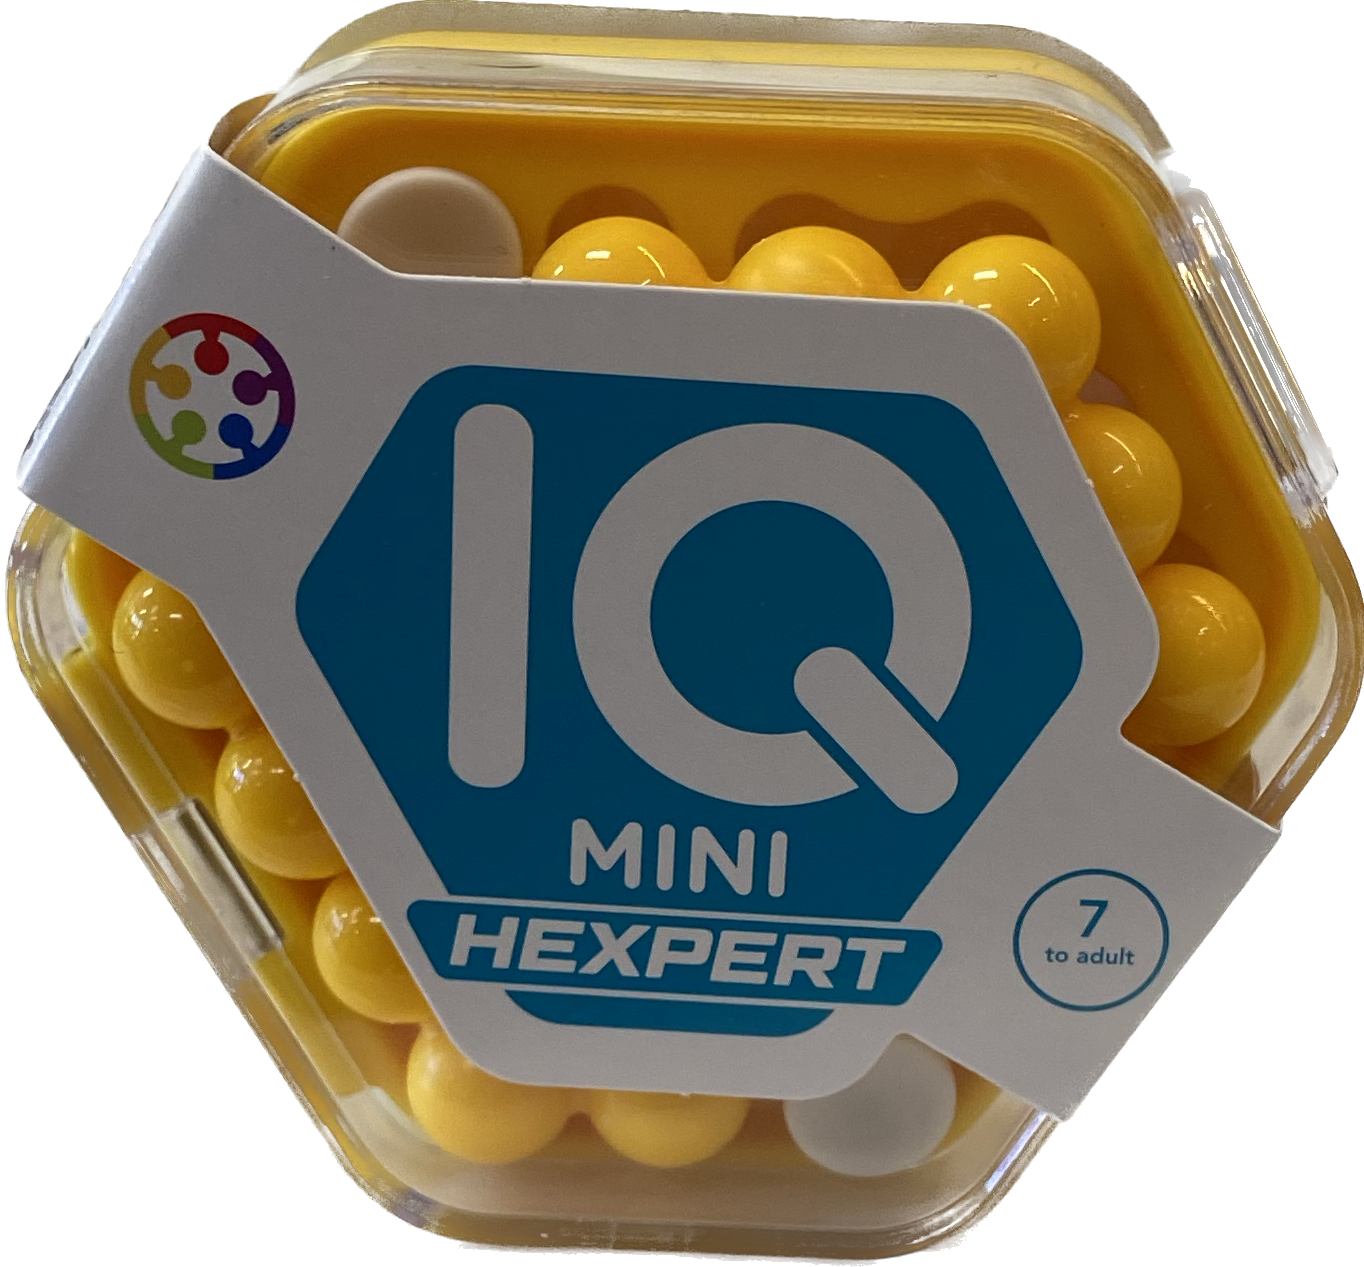 IQ Mini Hexpert